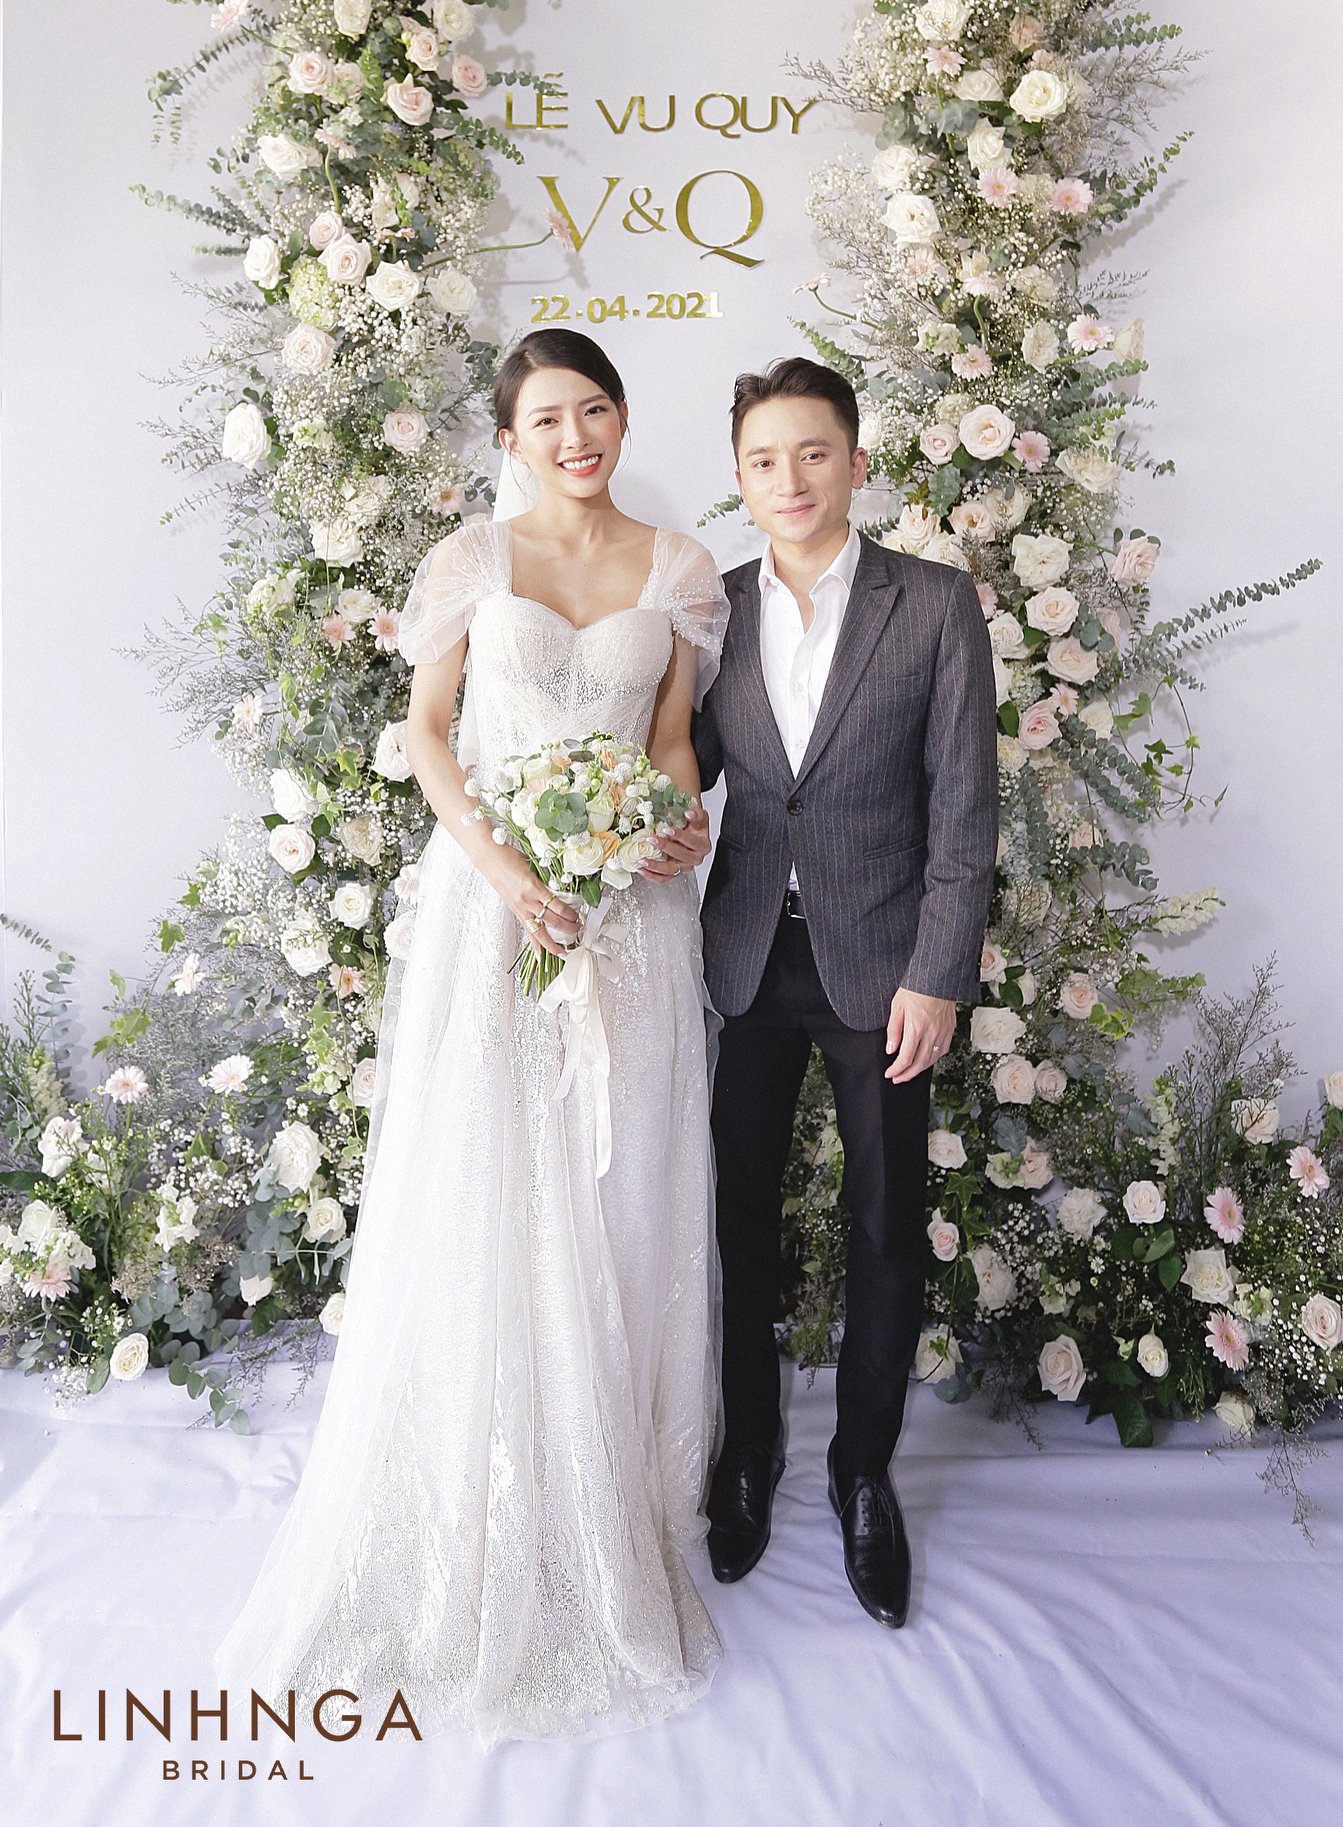 Đám cưới của nghệ sĩ Phan Mạnh Quỳnh là một sự kiện trọng đại của Showbiz Việt. Với không khí lãng mạn, ấm áp và đầy niềm vui, đám cưới này chắc chắn sẽ làm say lòng những ai yêu thích tình yêu và sự lãng mạn.